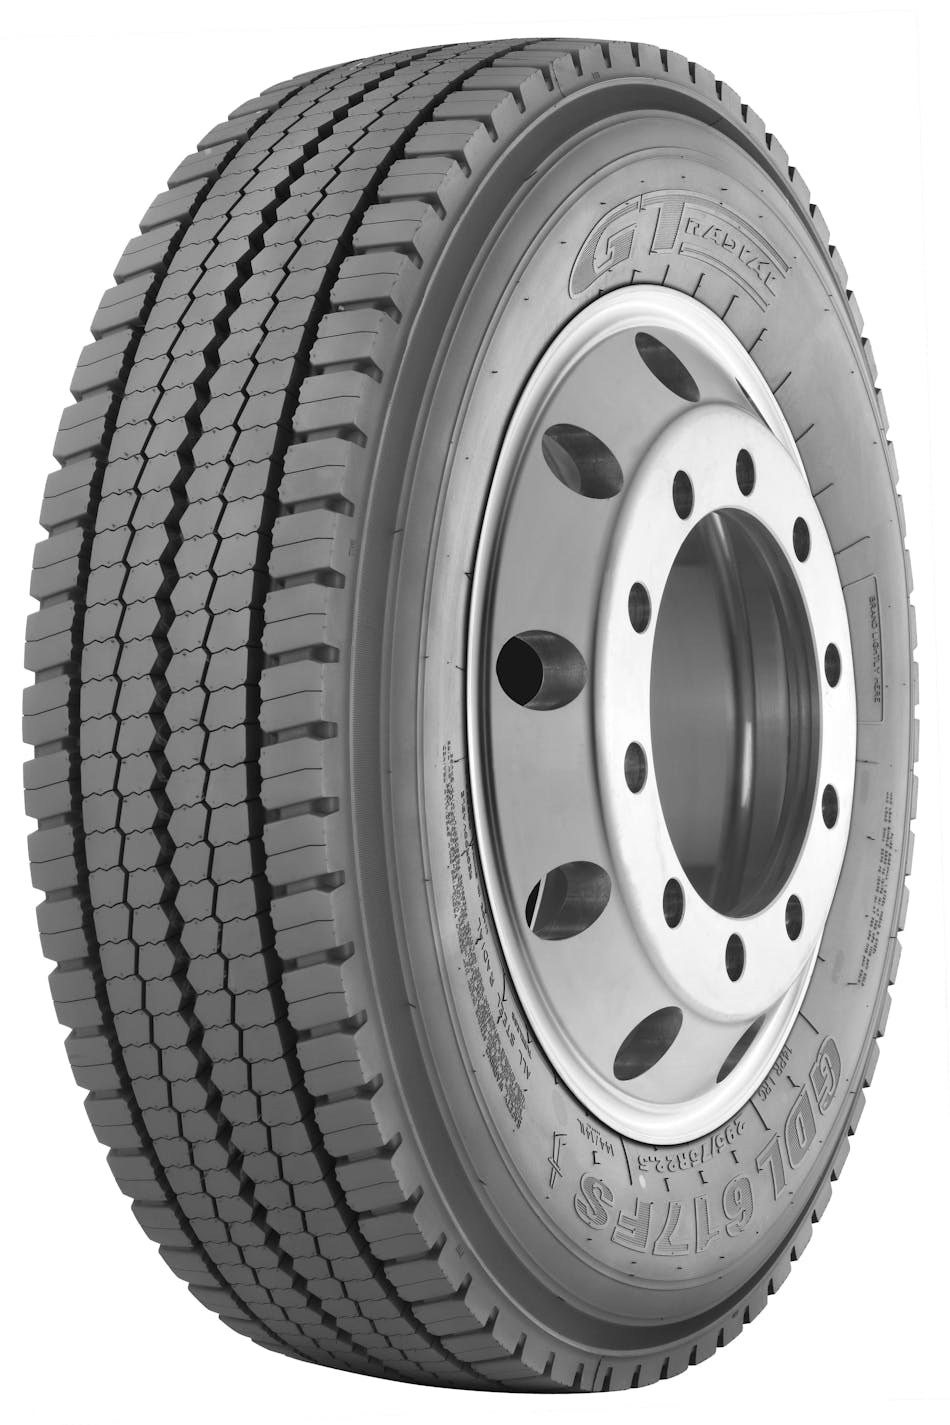 giti-reveals-long-haul-drive-tire